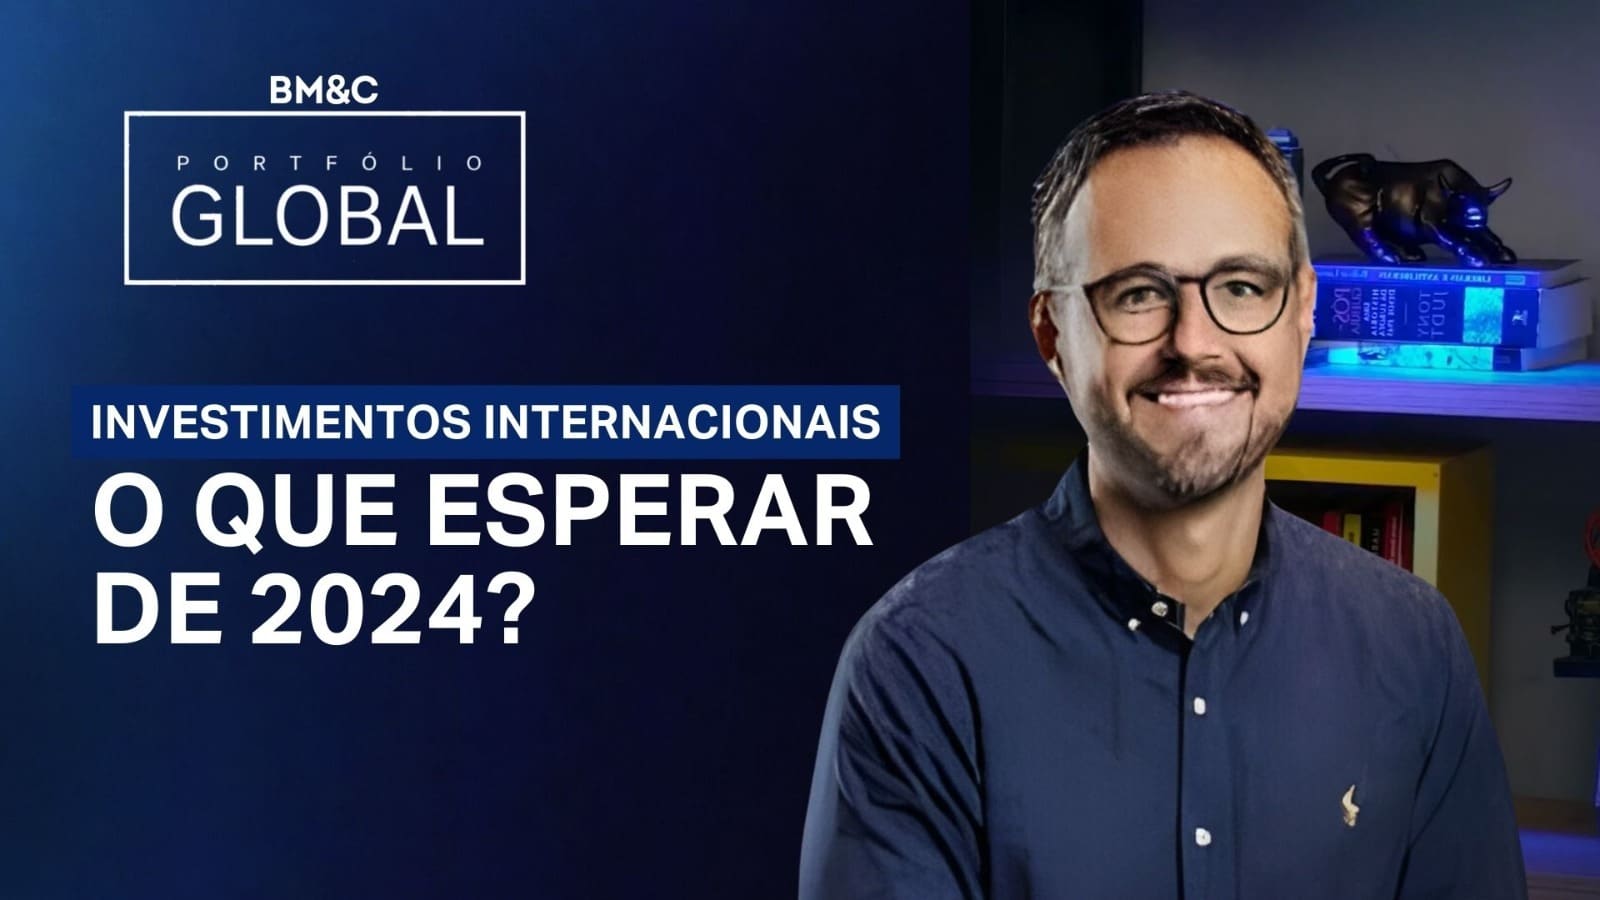 INVESTIMENTOS INTERNACIONAIS: O QUE ESPERAR DE 2024? | PORTFÓLIO GLOBAL COM WILLIAM CASTRO ALVES